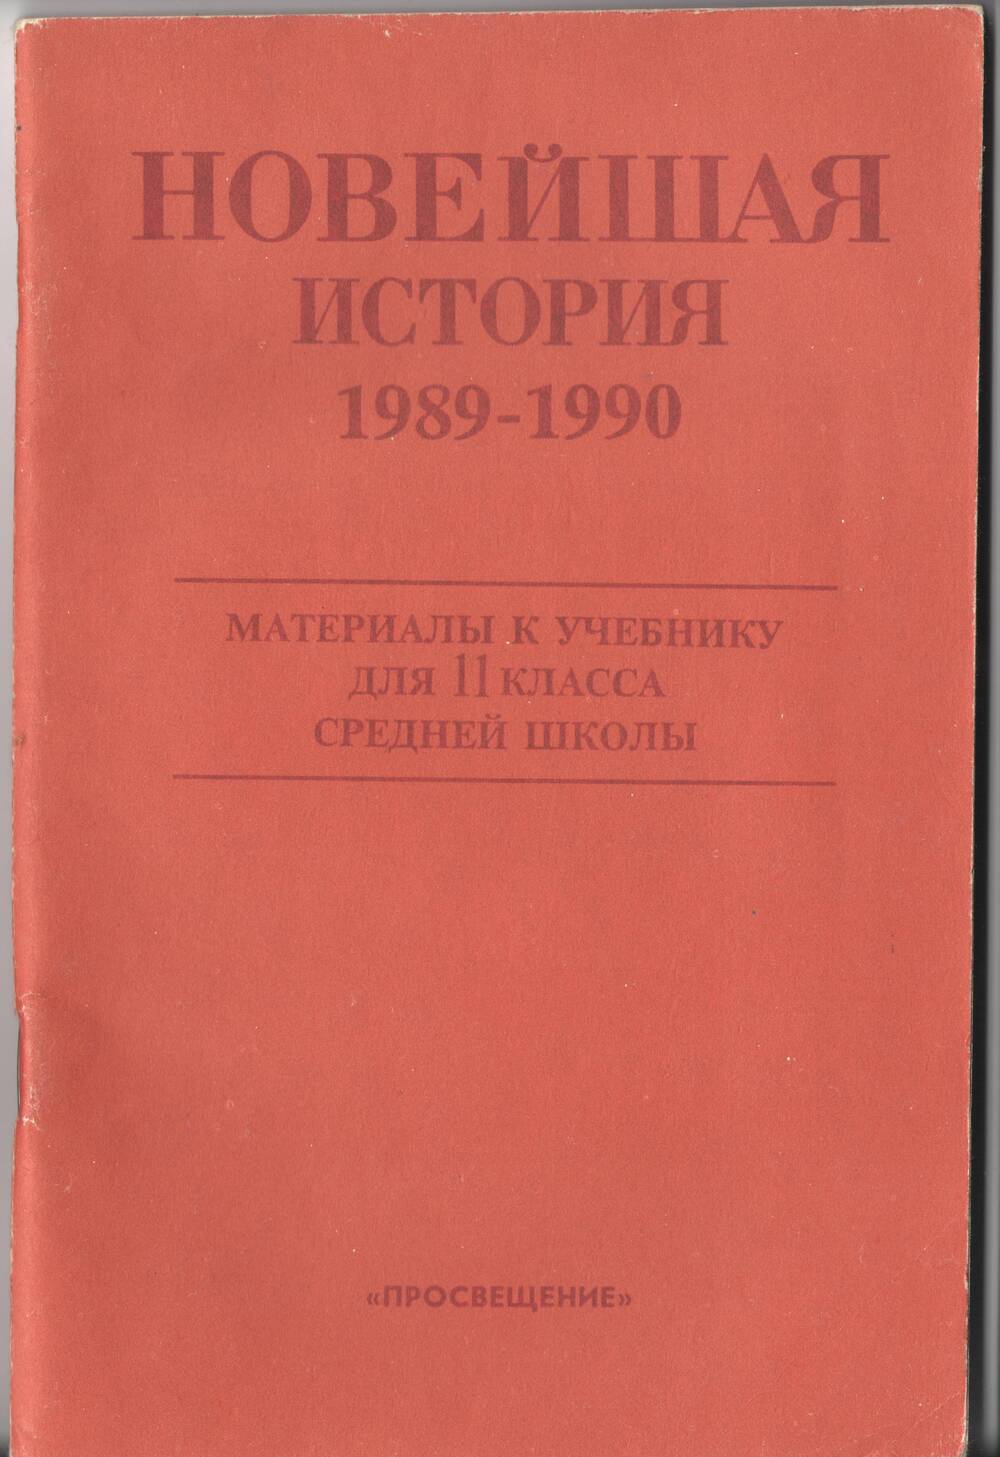 Брошюра. Новейшая история 1989-1990